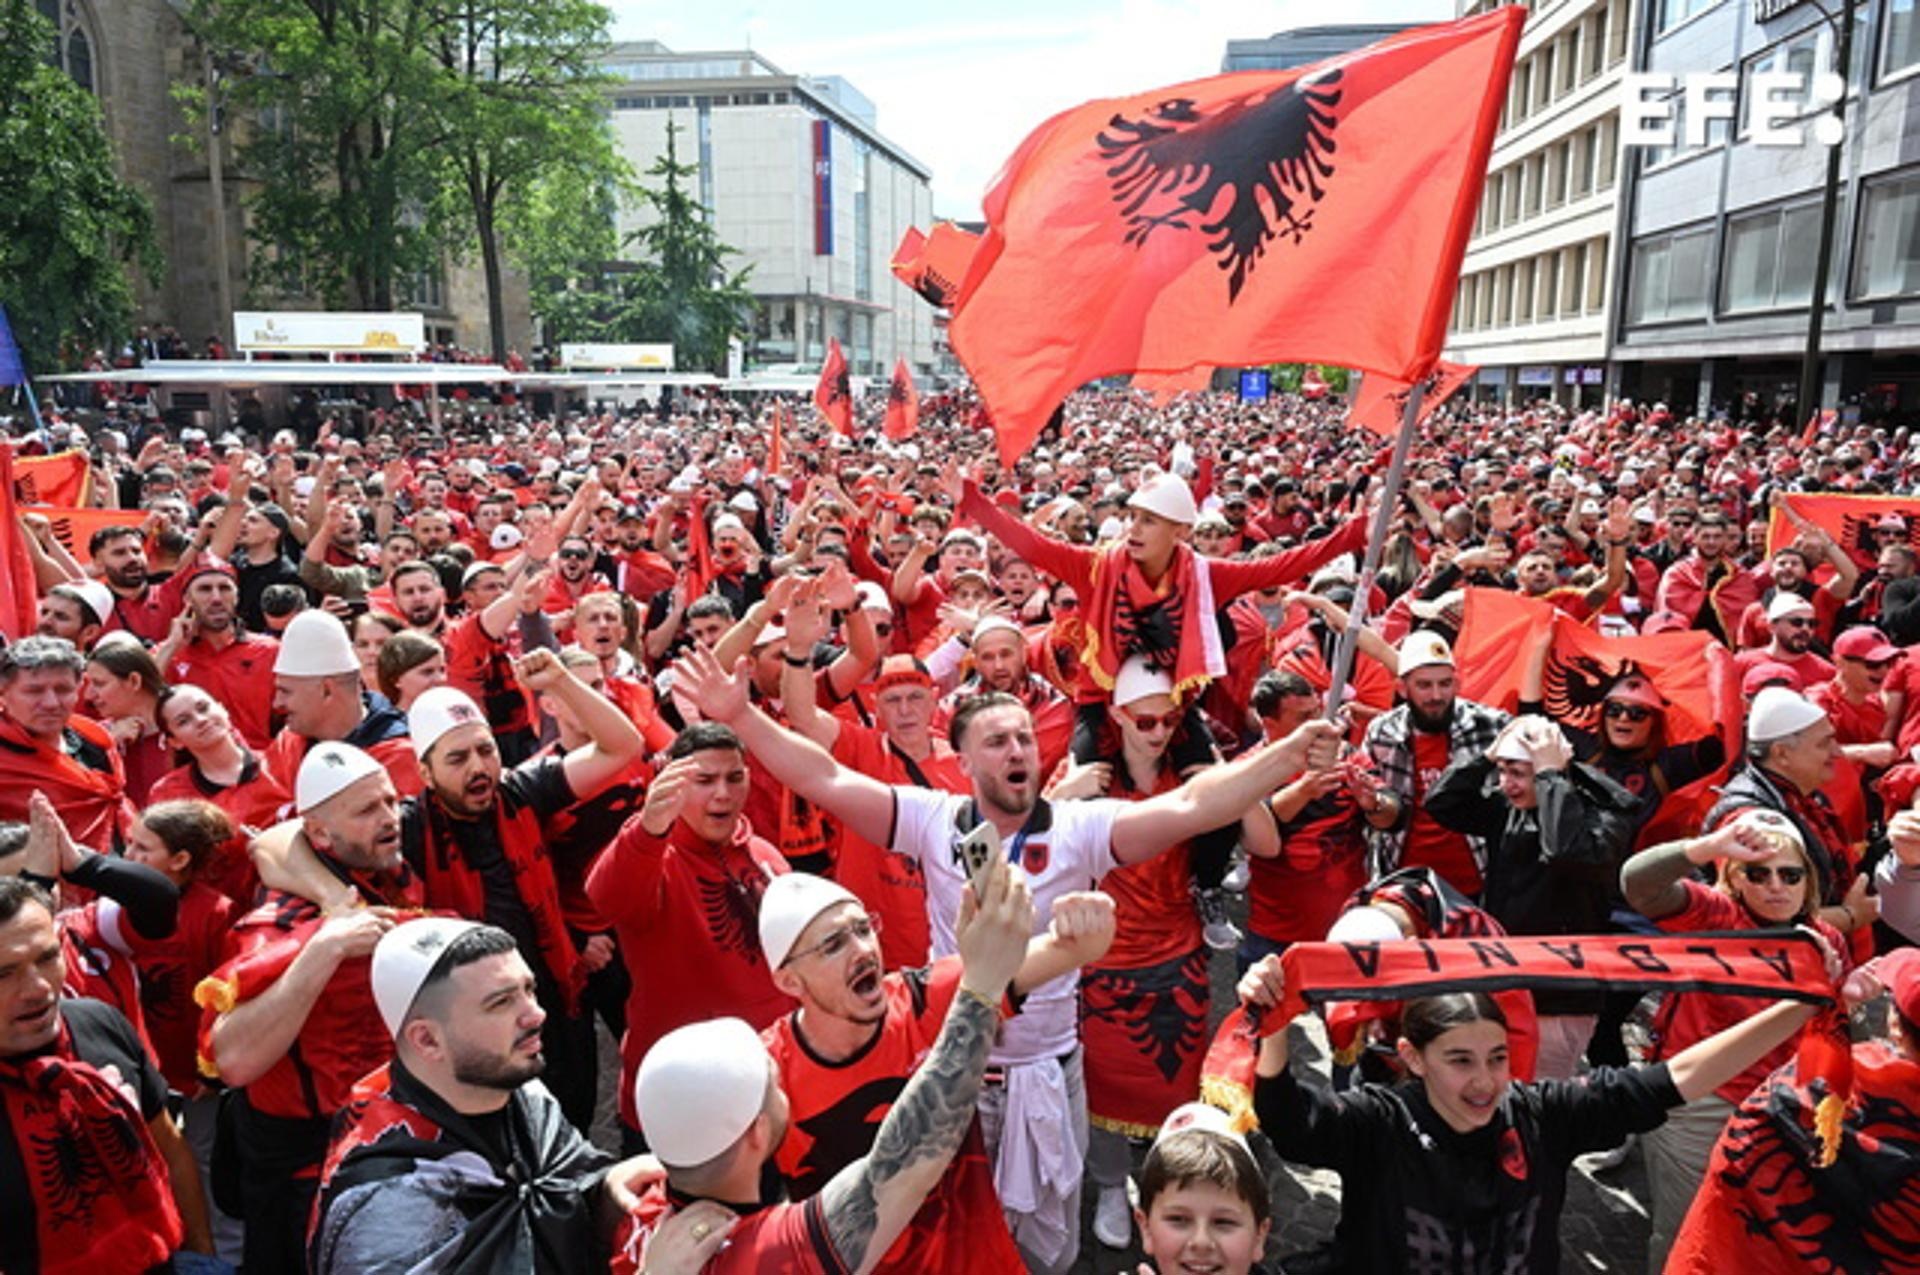 A Albania le sale cara su afición: 37.000 euros por portarse mal